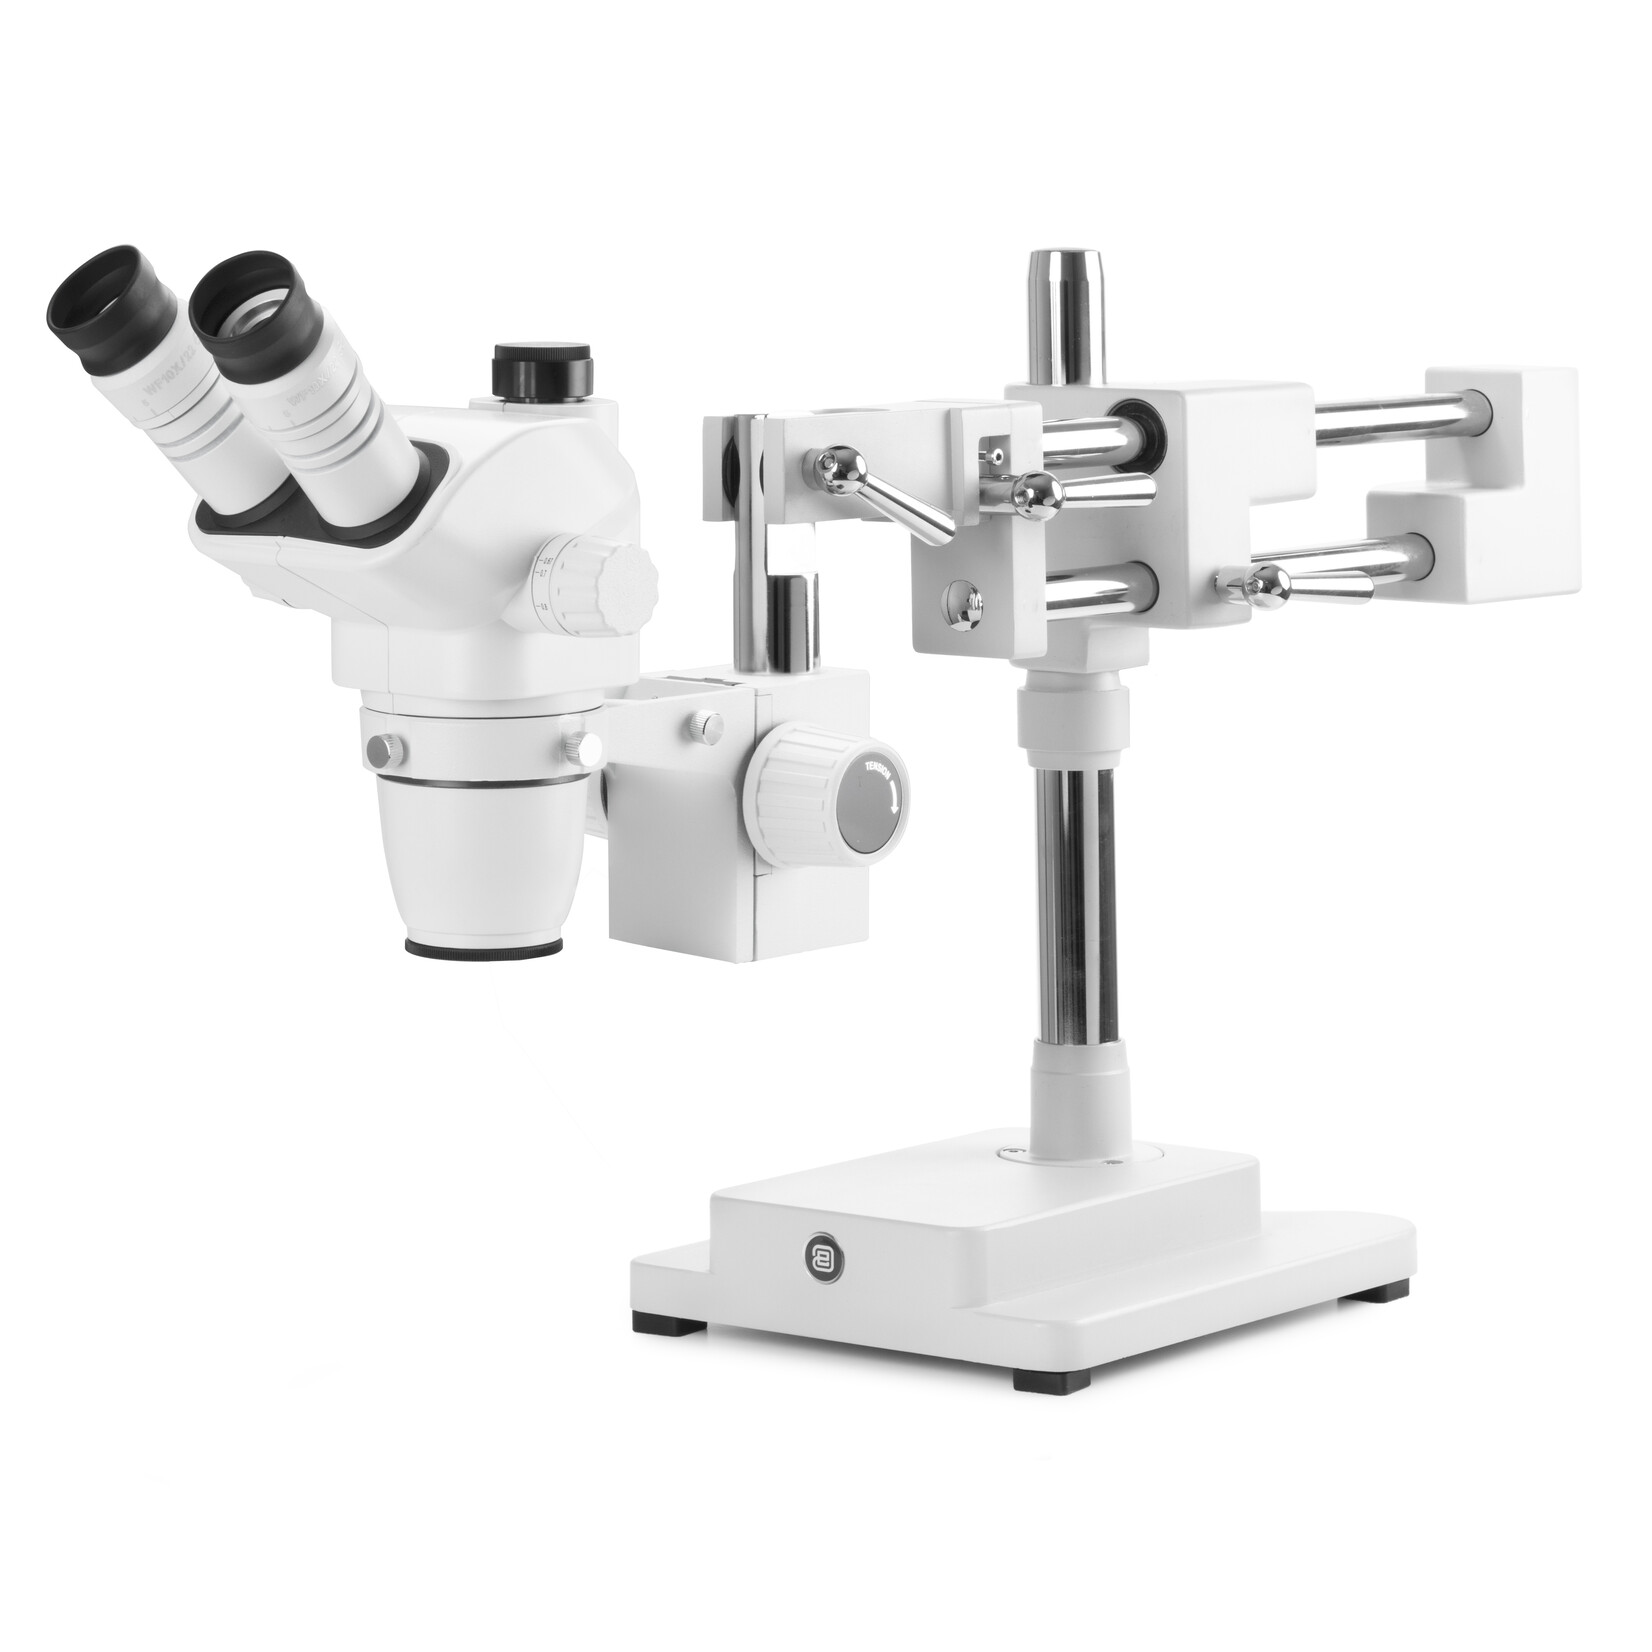 Trinokulares Stereo-Zoom-Mikroskop NexiusZoom EVO-DFS, 0,65x bis 5,5x Zoomobjektiv, Vergrößerung von 6,5x bis 55x